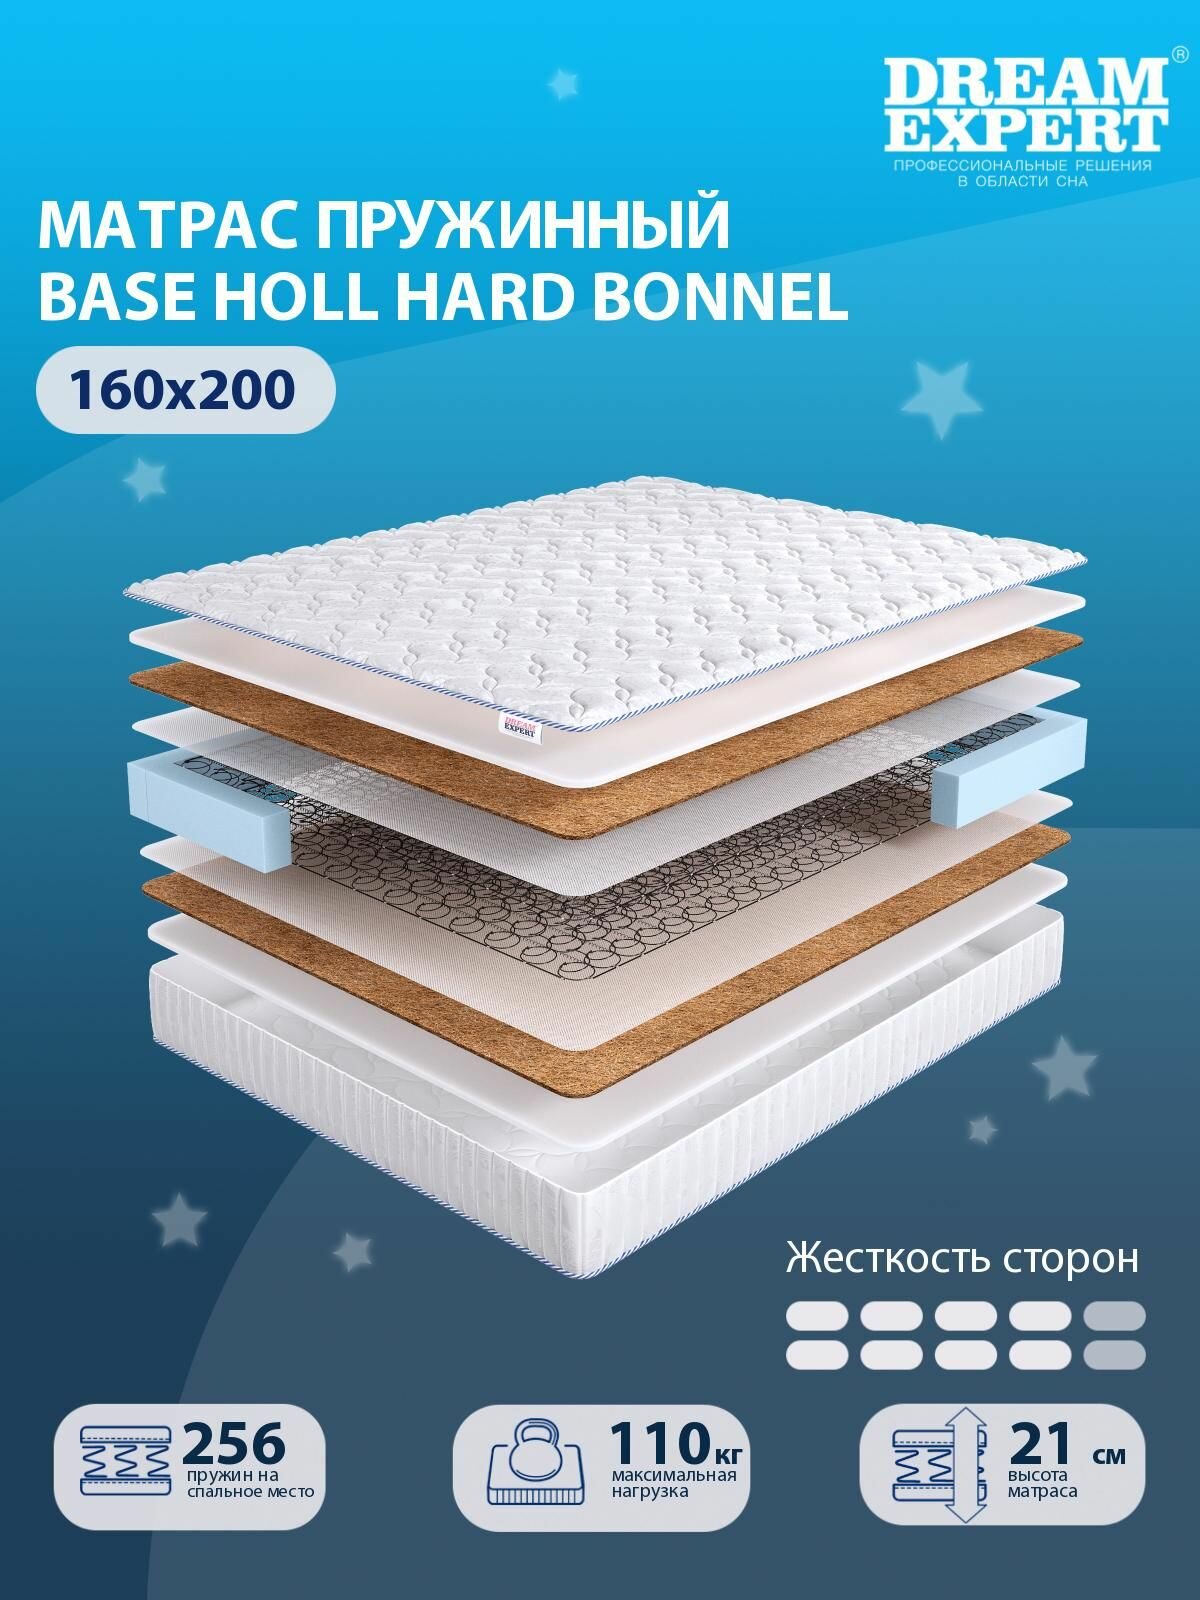 Матрас DreamExpert Base Holl Hard Bonnel выше средней жесткости, двуспальный, зависимый пружинный блок, на кровать 160x200